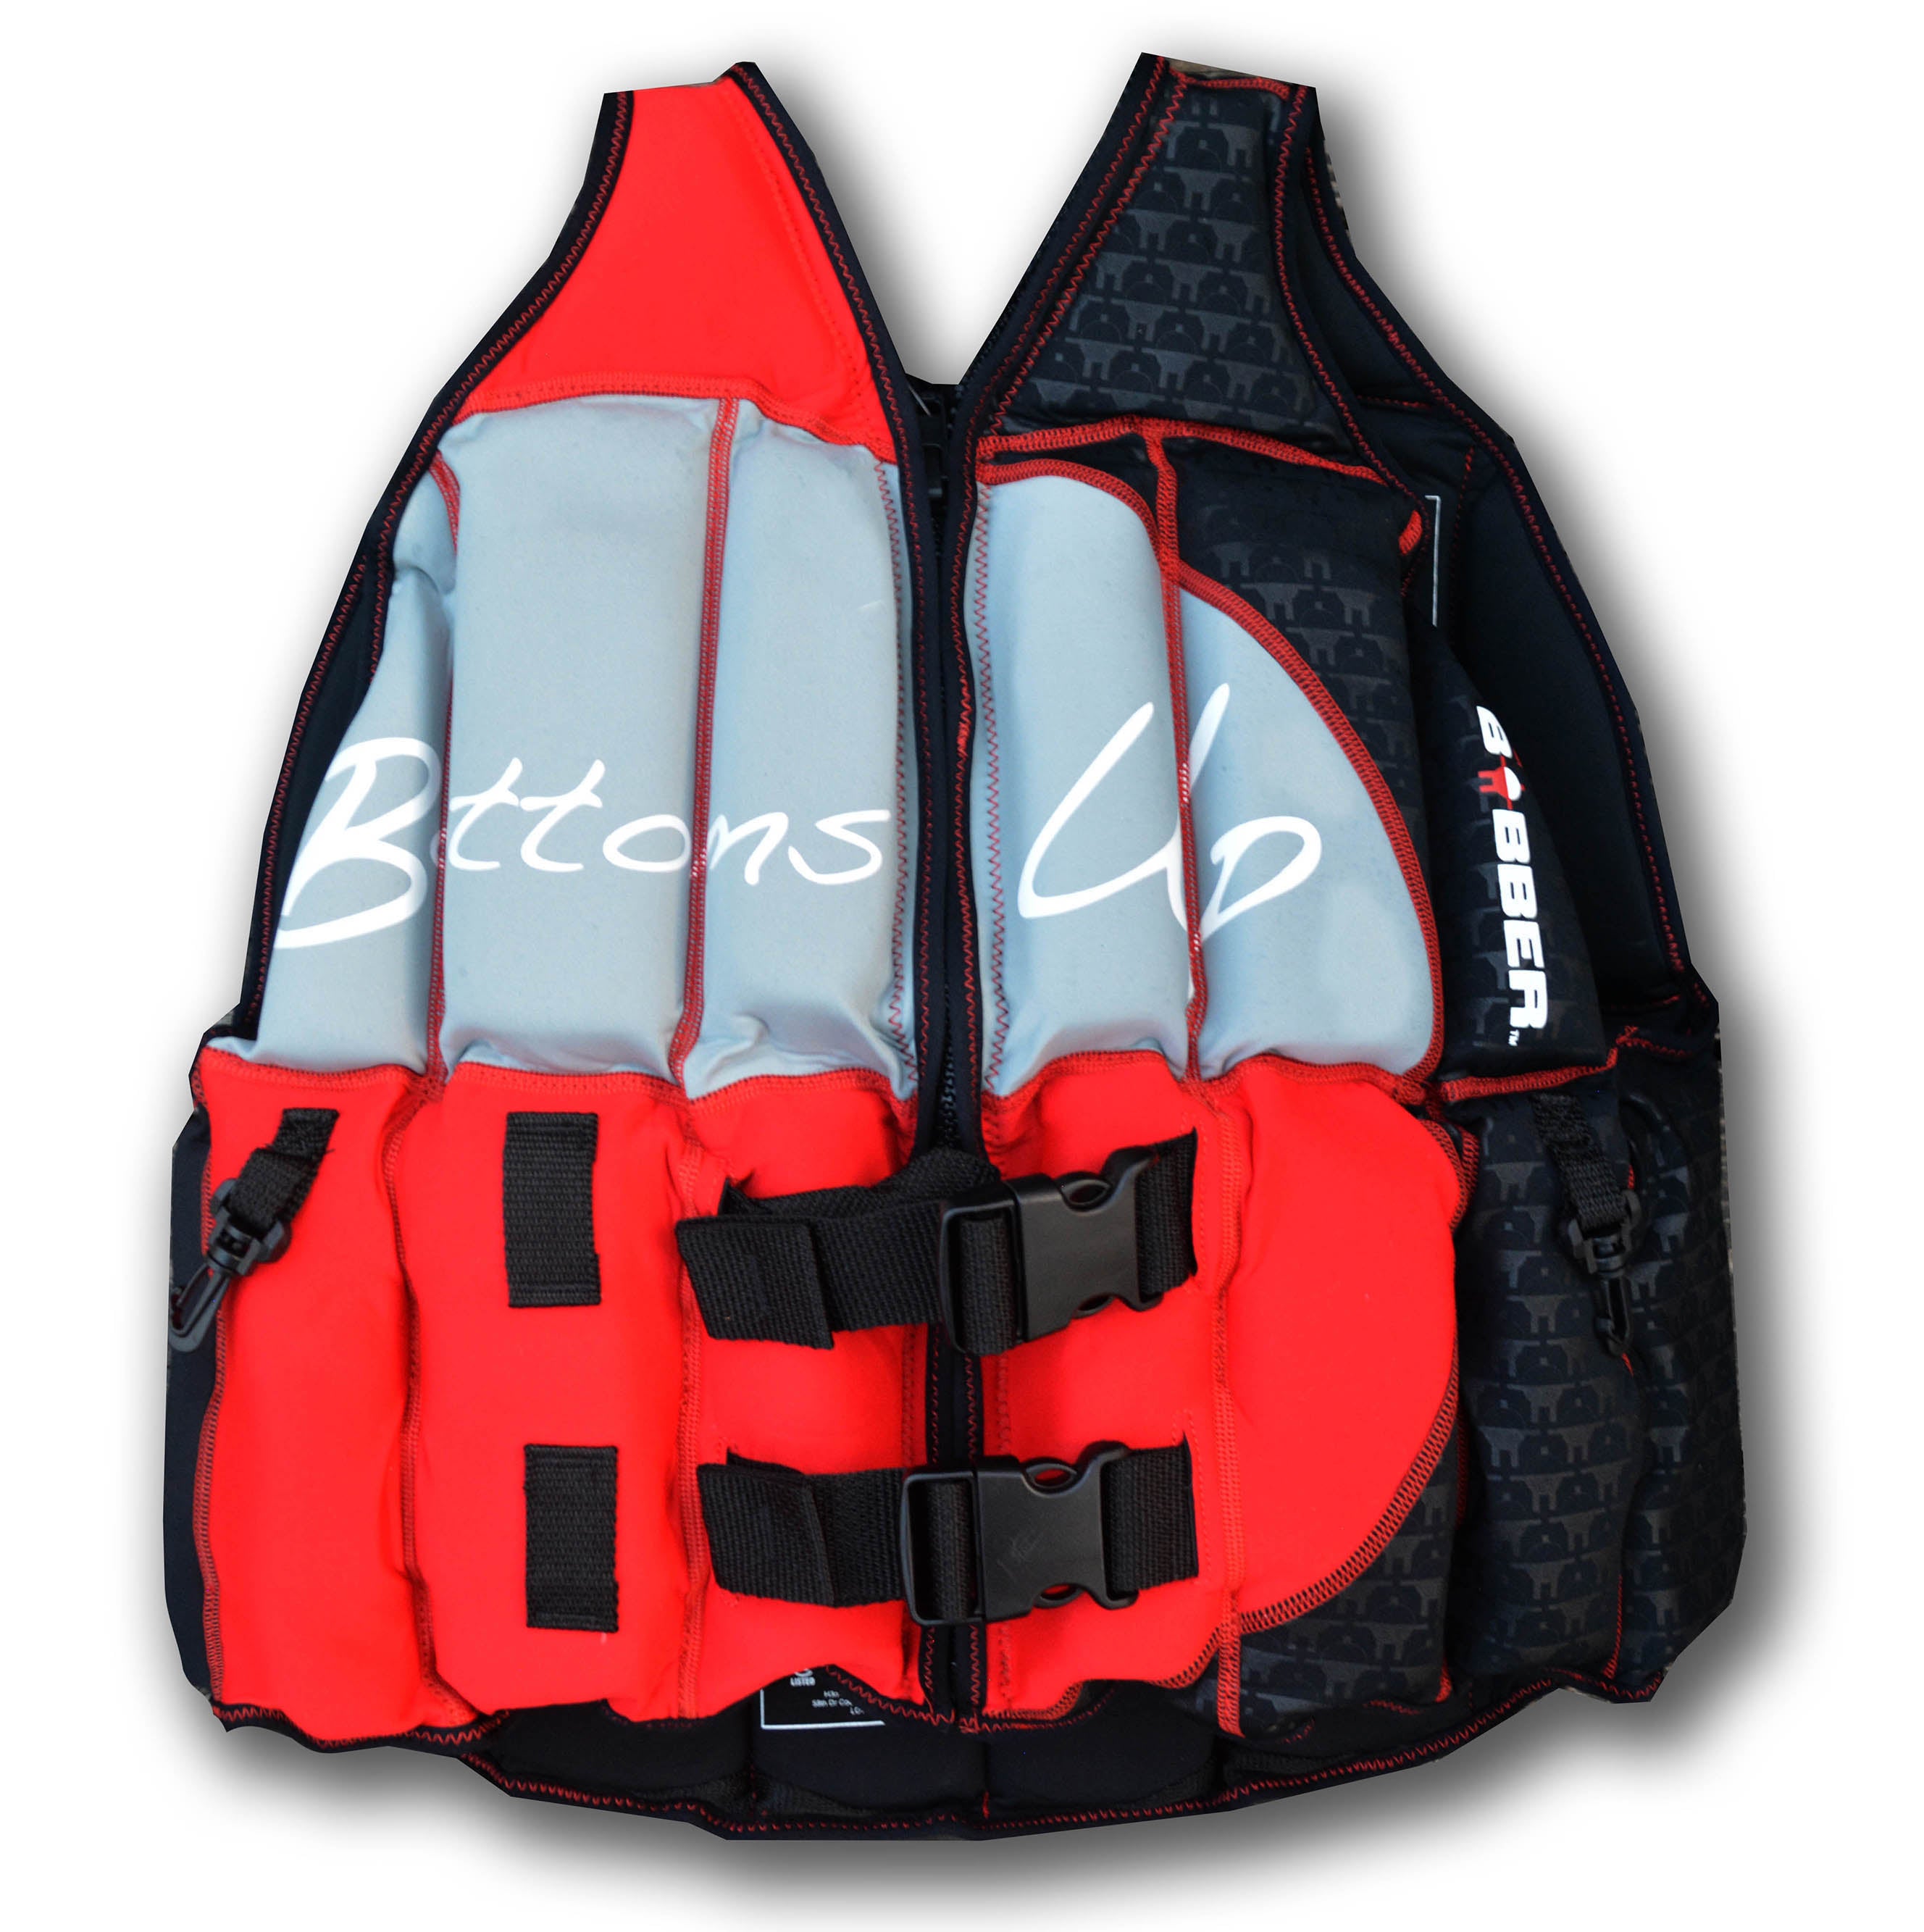 Shop Yamaha Boating Safety - PFD Life Jackets